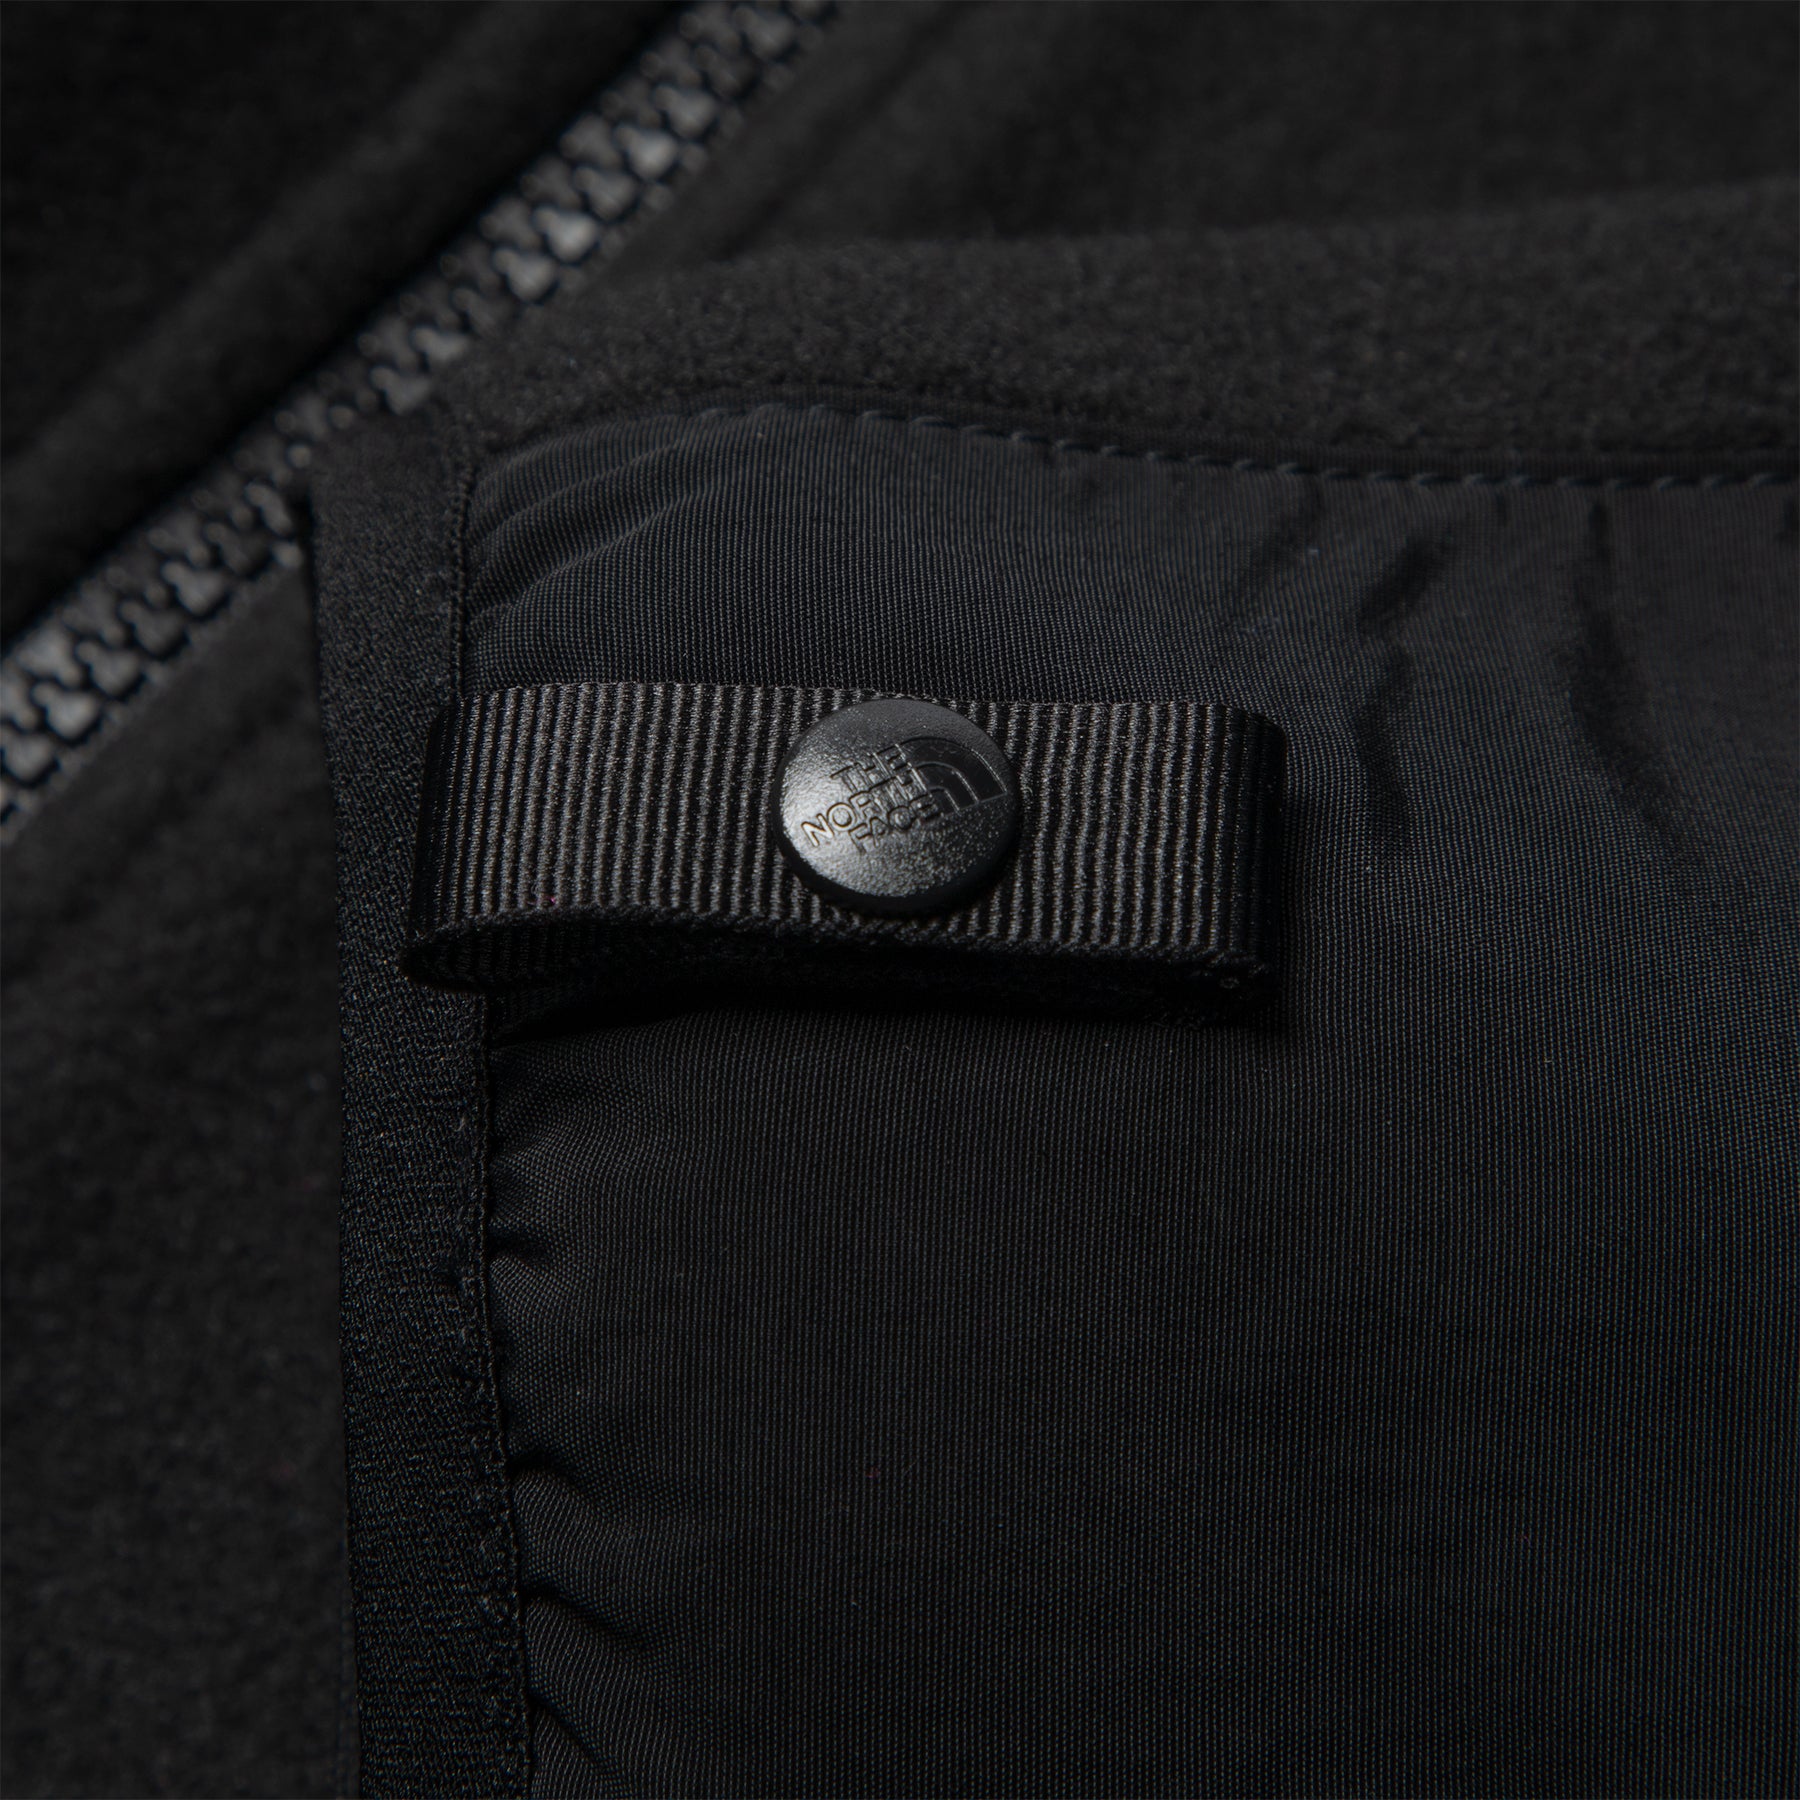 The North Face Denali Jacket (Black)